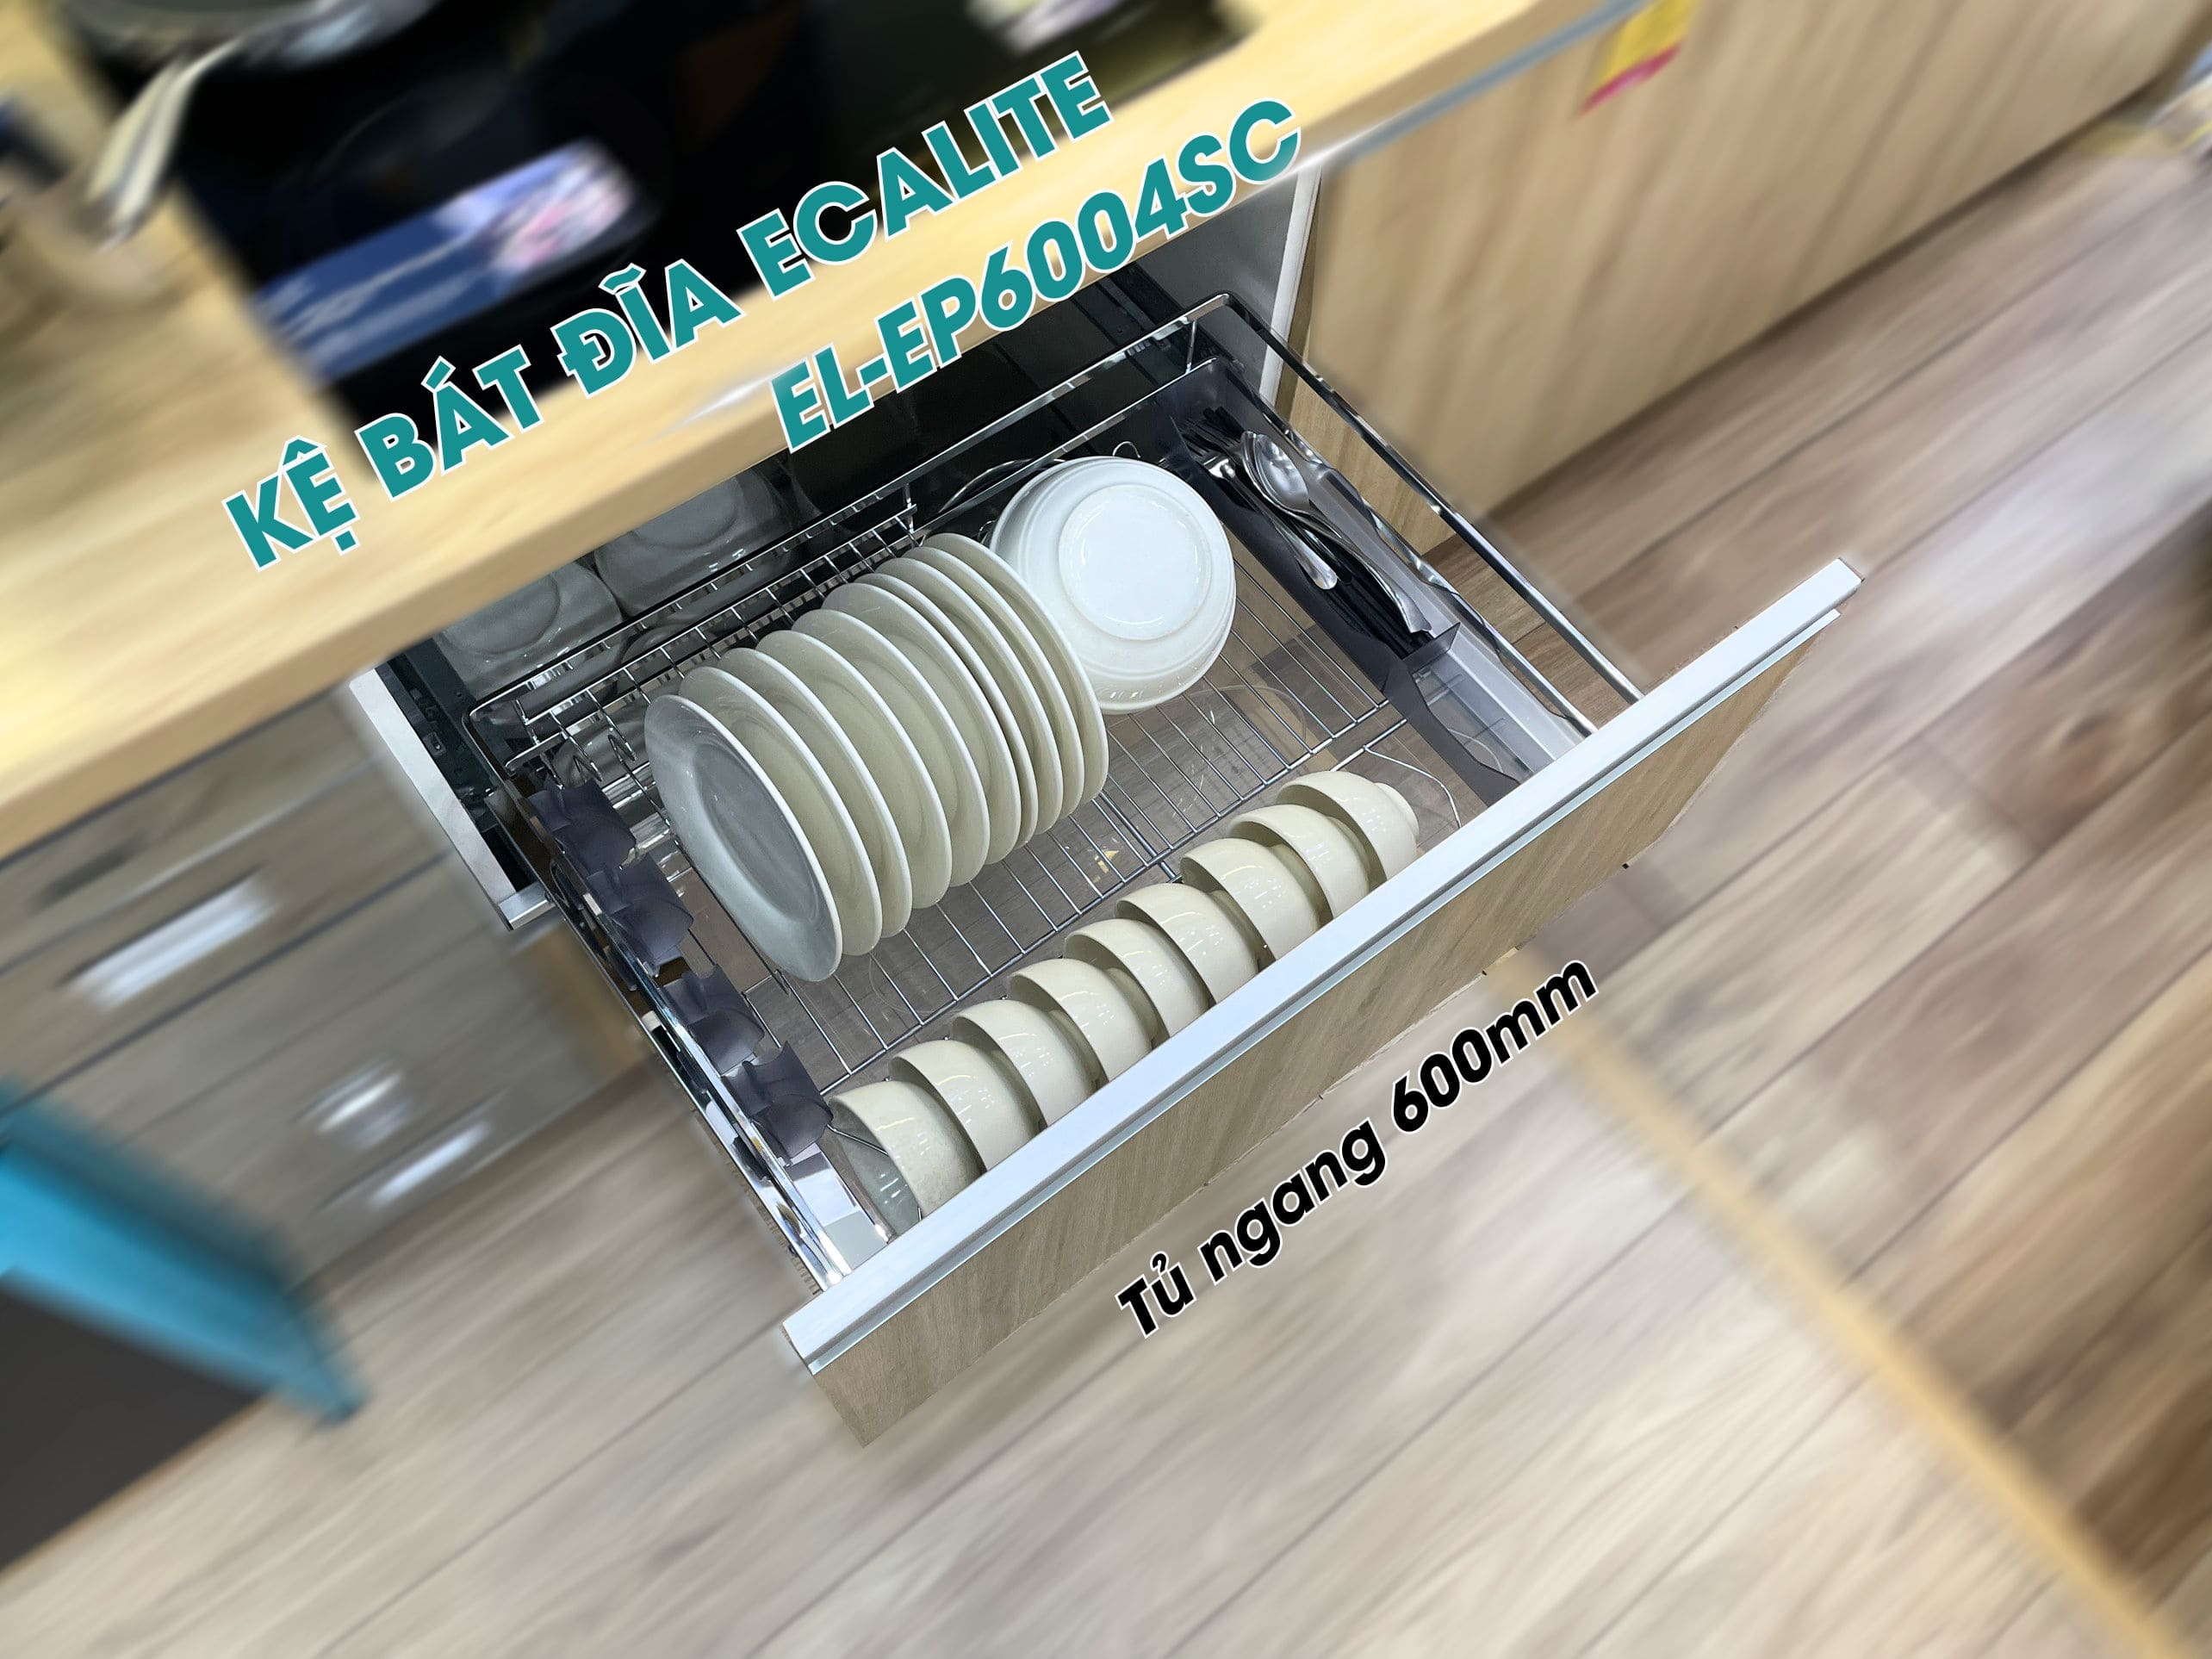 Kệ bát đĩa tủ dưới Ecalite EL-EP6004SC